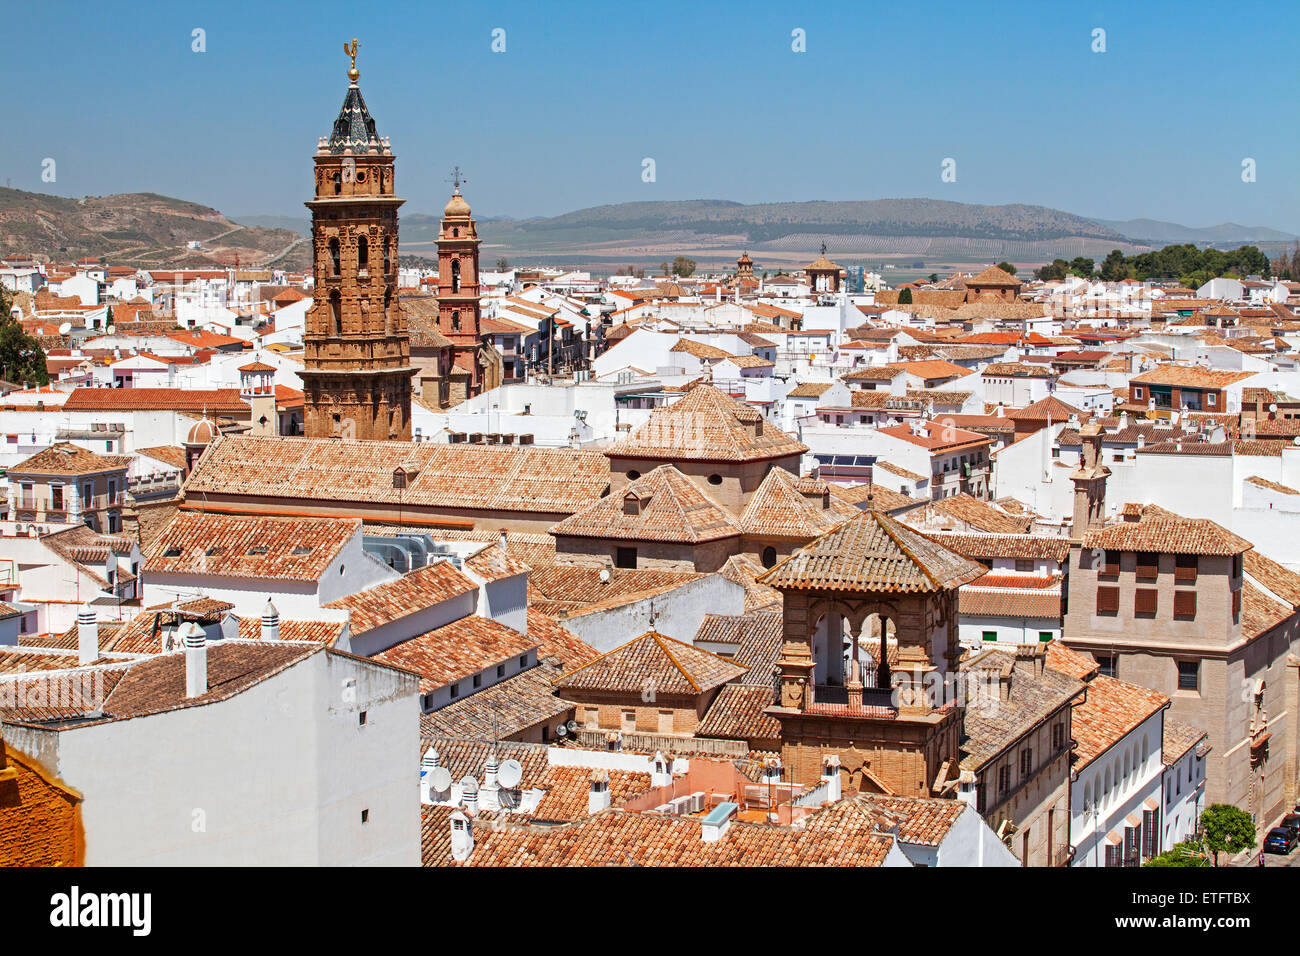 Antequera, Andalusien - ein Blick über die Stadt San Sebastian Kirche mit Glockenturm - Spanien Stockfoto